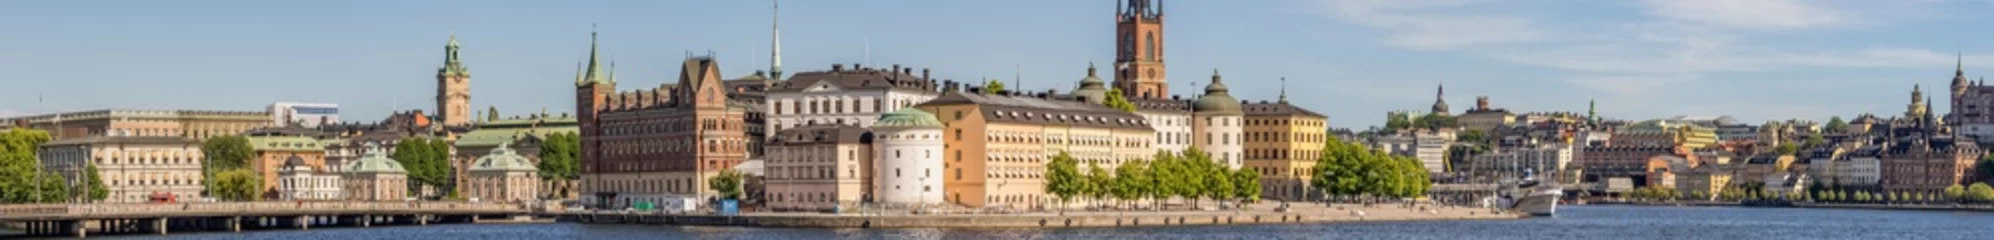 Fototapeten Stockholm-Panorama © Steve